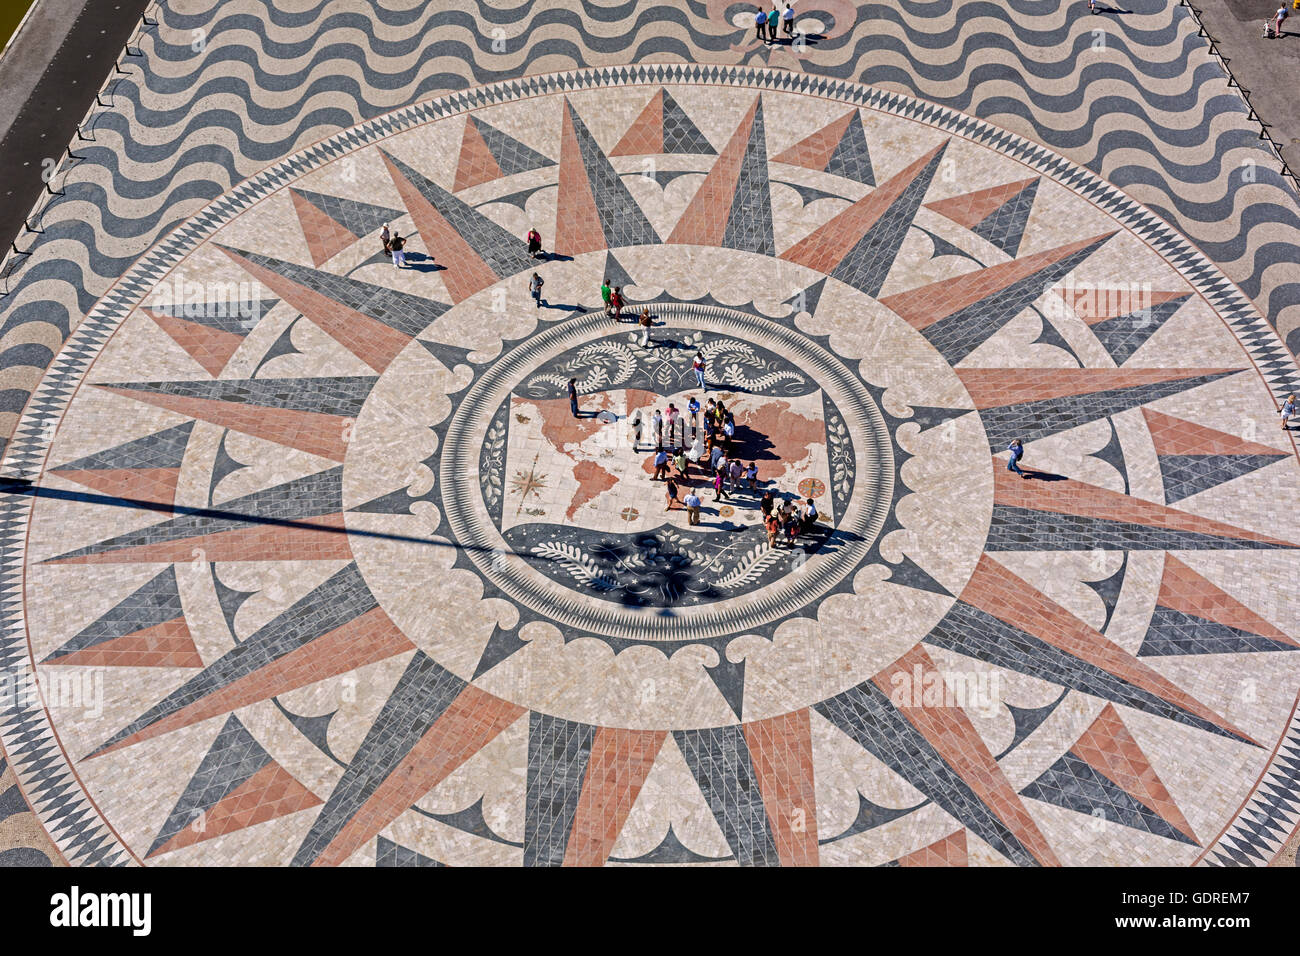 Die großen Kompass im Pflaster vor dem Monumento ein Los Descubrimientos,  Lissabon, Stadtteil von Lissabon, Portugal, Europa Stockfotografie - Alamy